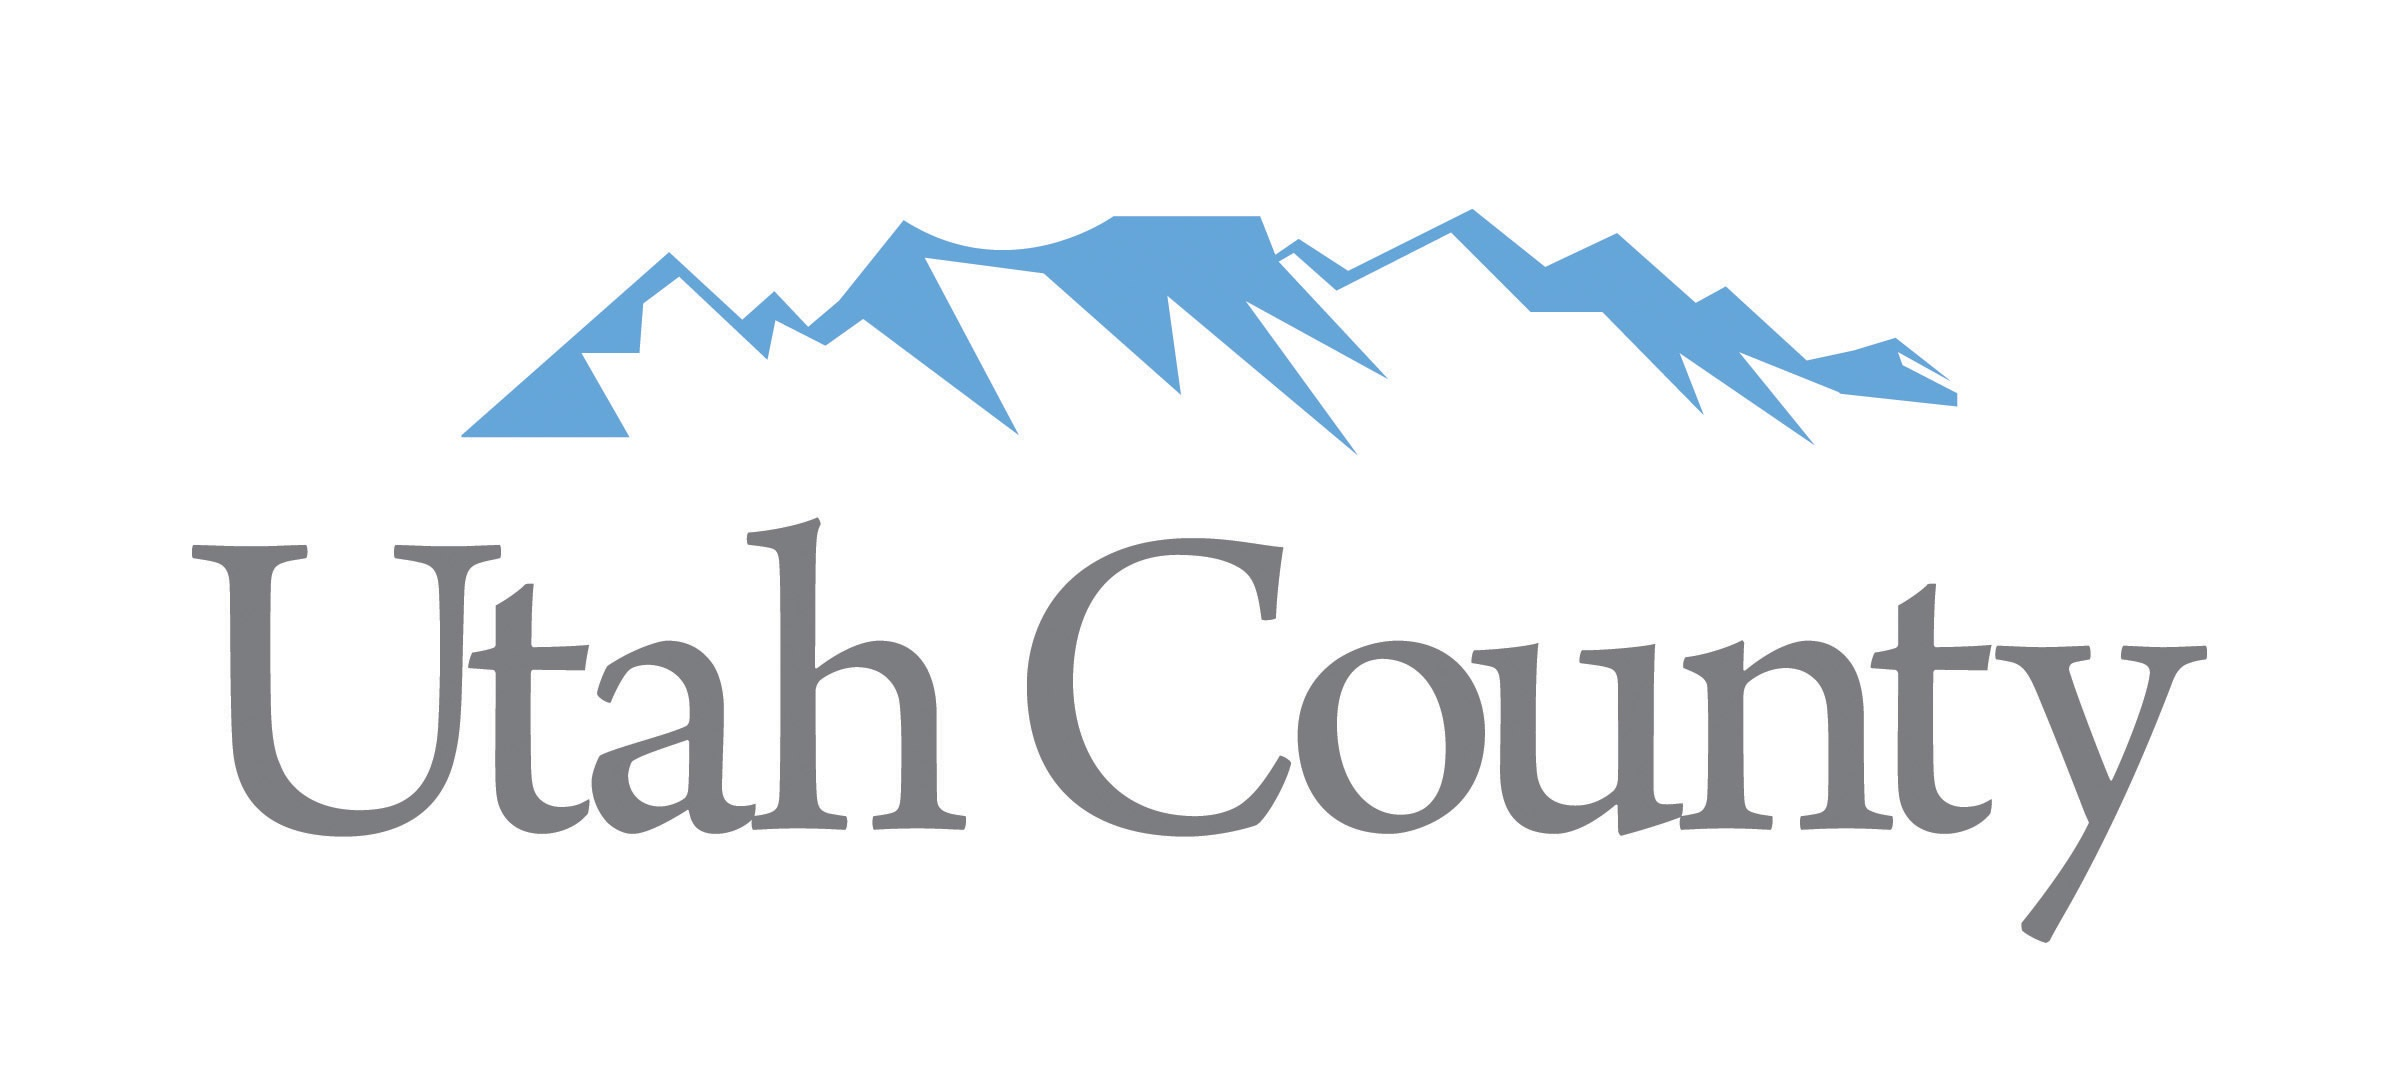 Utah County Logo